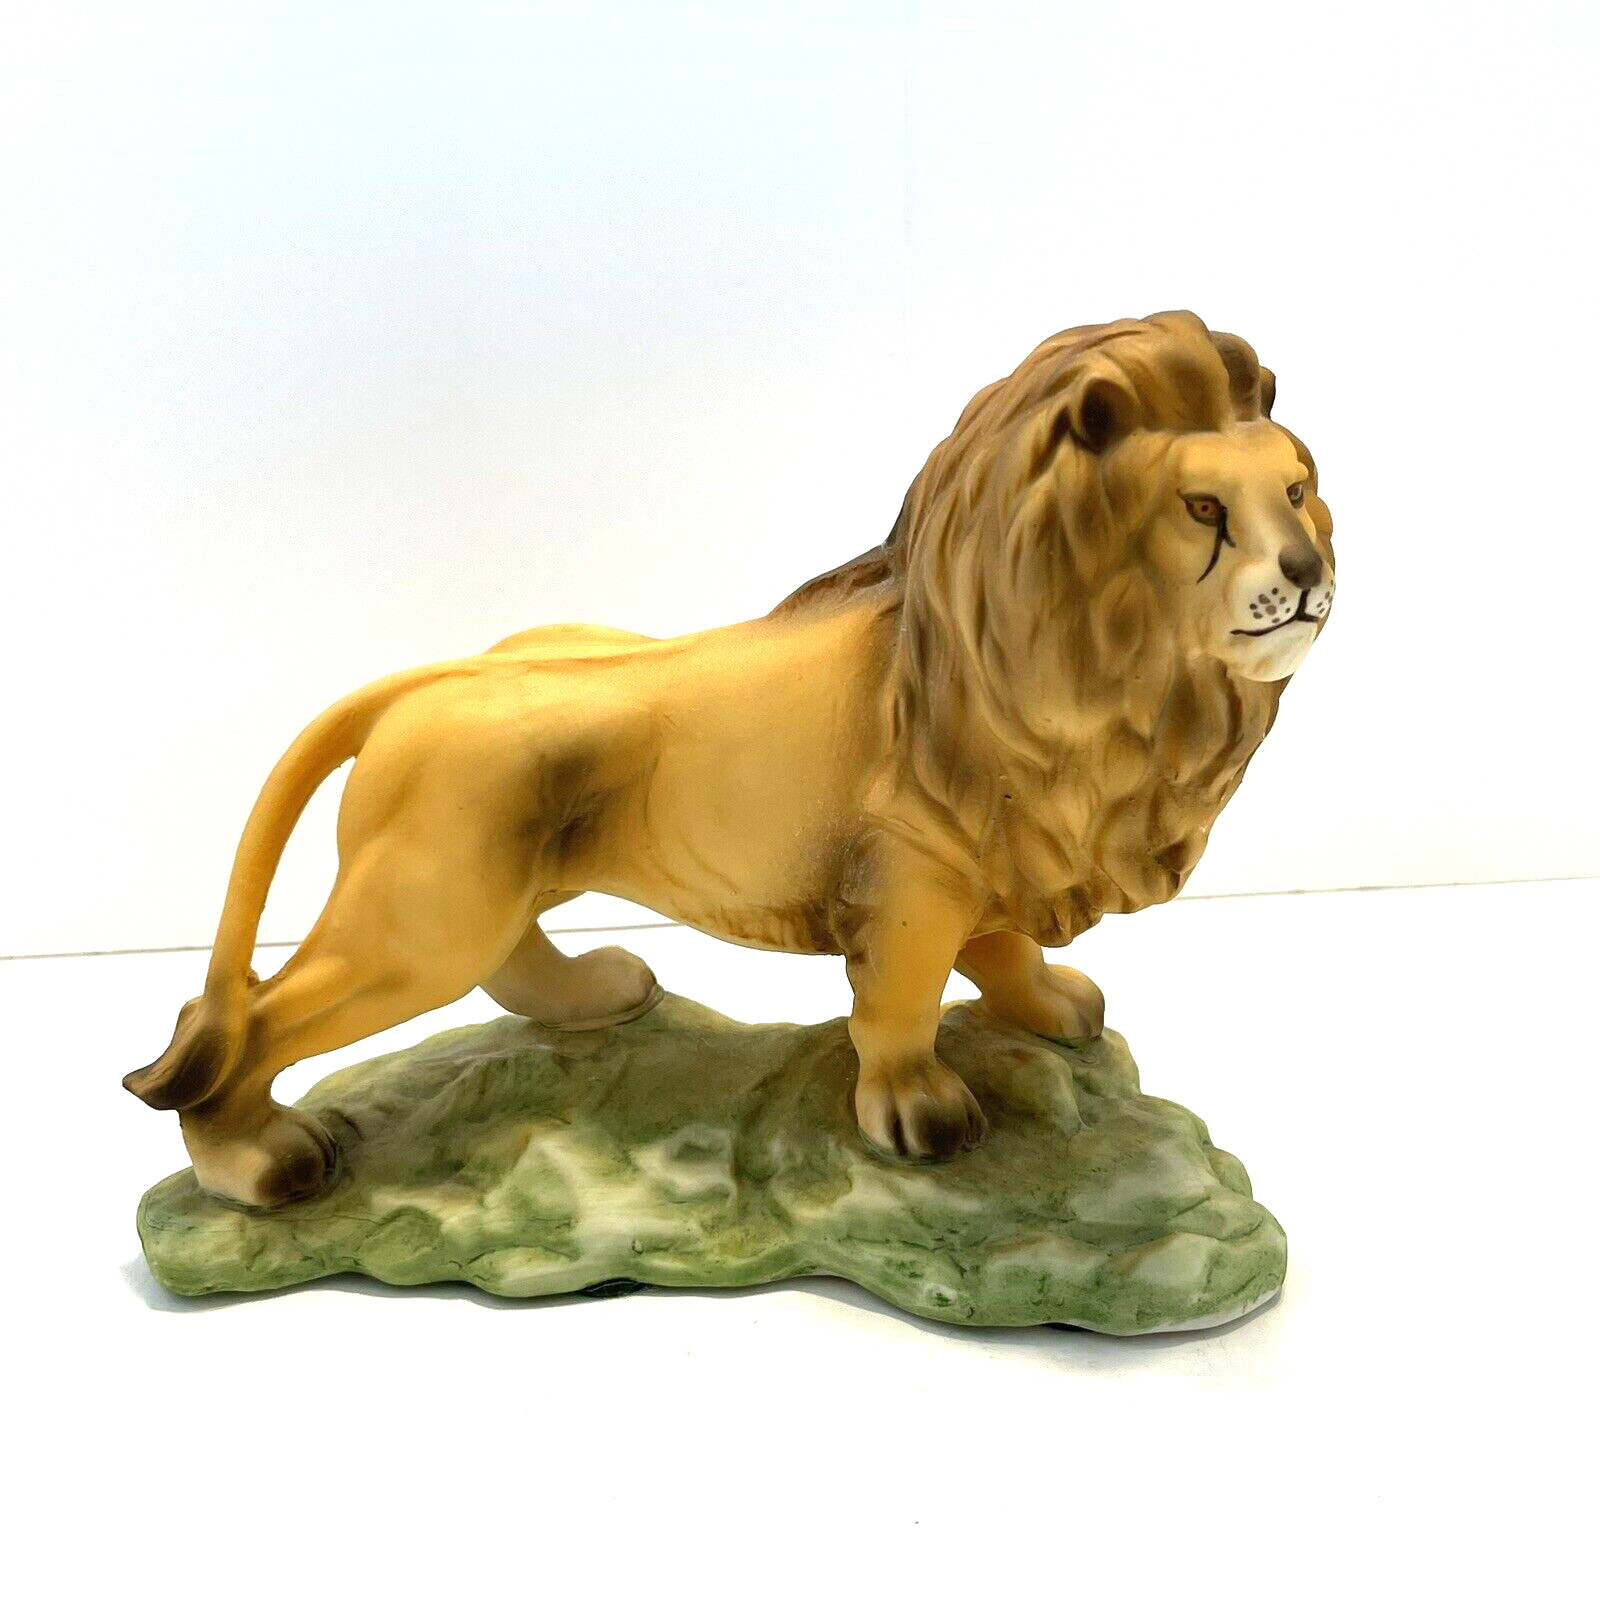 Vintage Aldon Accessories Lion Figurine Porcelain 1974